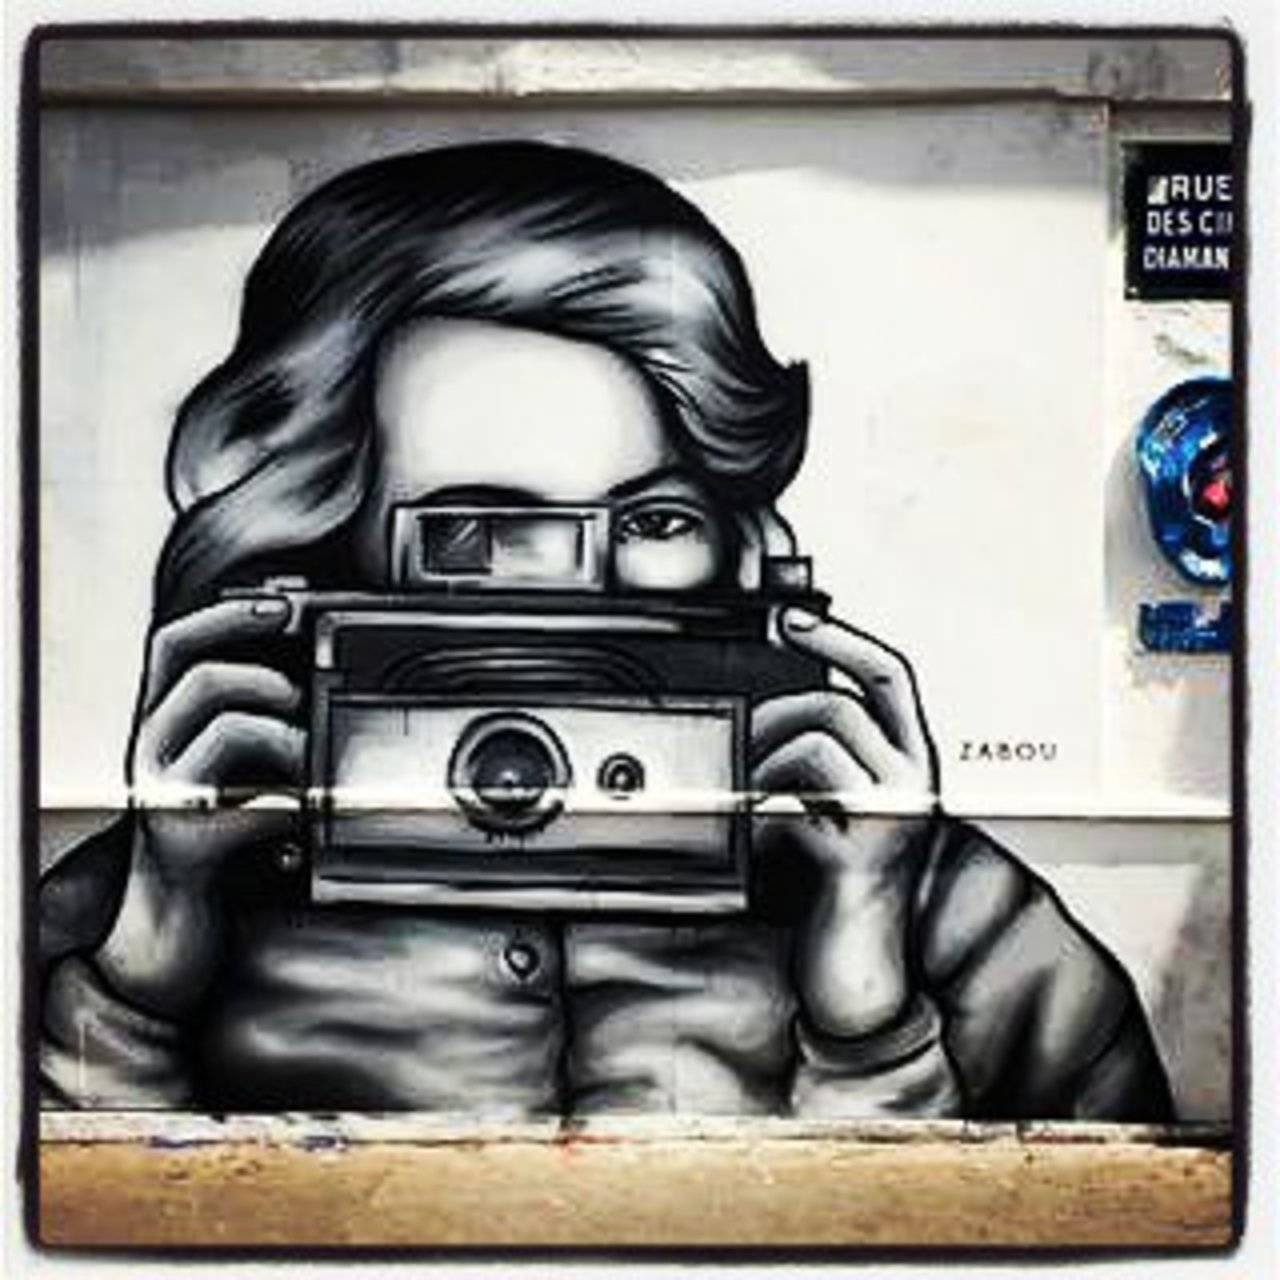 #Paris #graffiti photo by @senyorerre http://ift.tt/1MK3An0 #StreetArt https://t.co/kgWMZpULzG